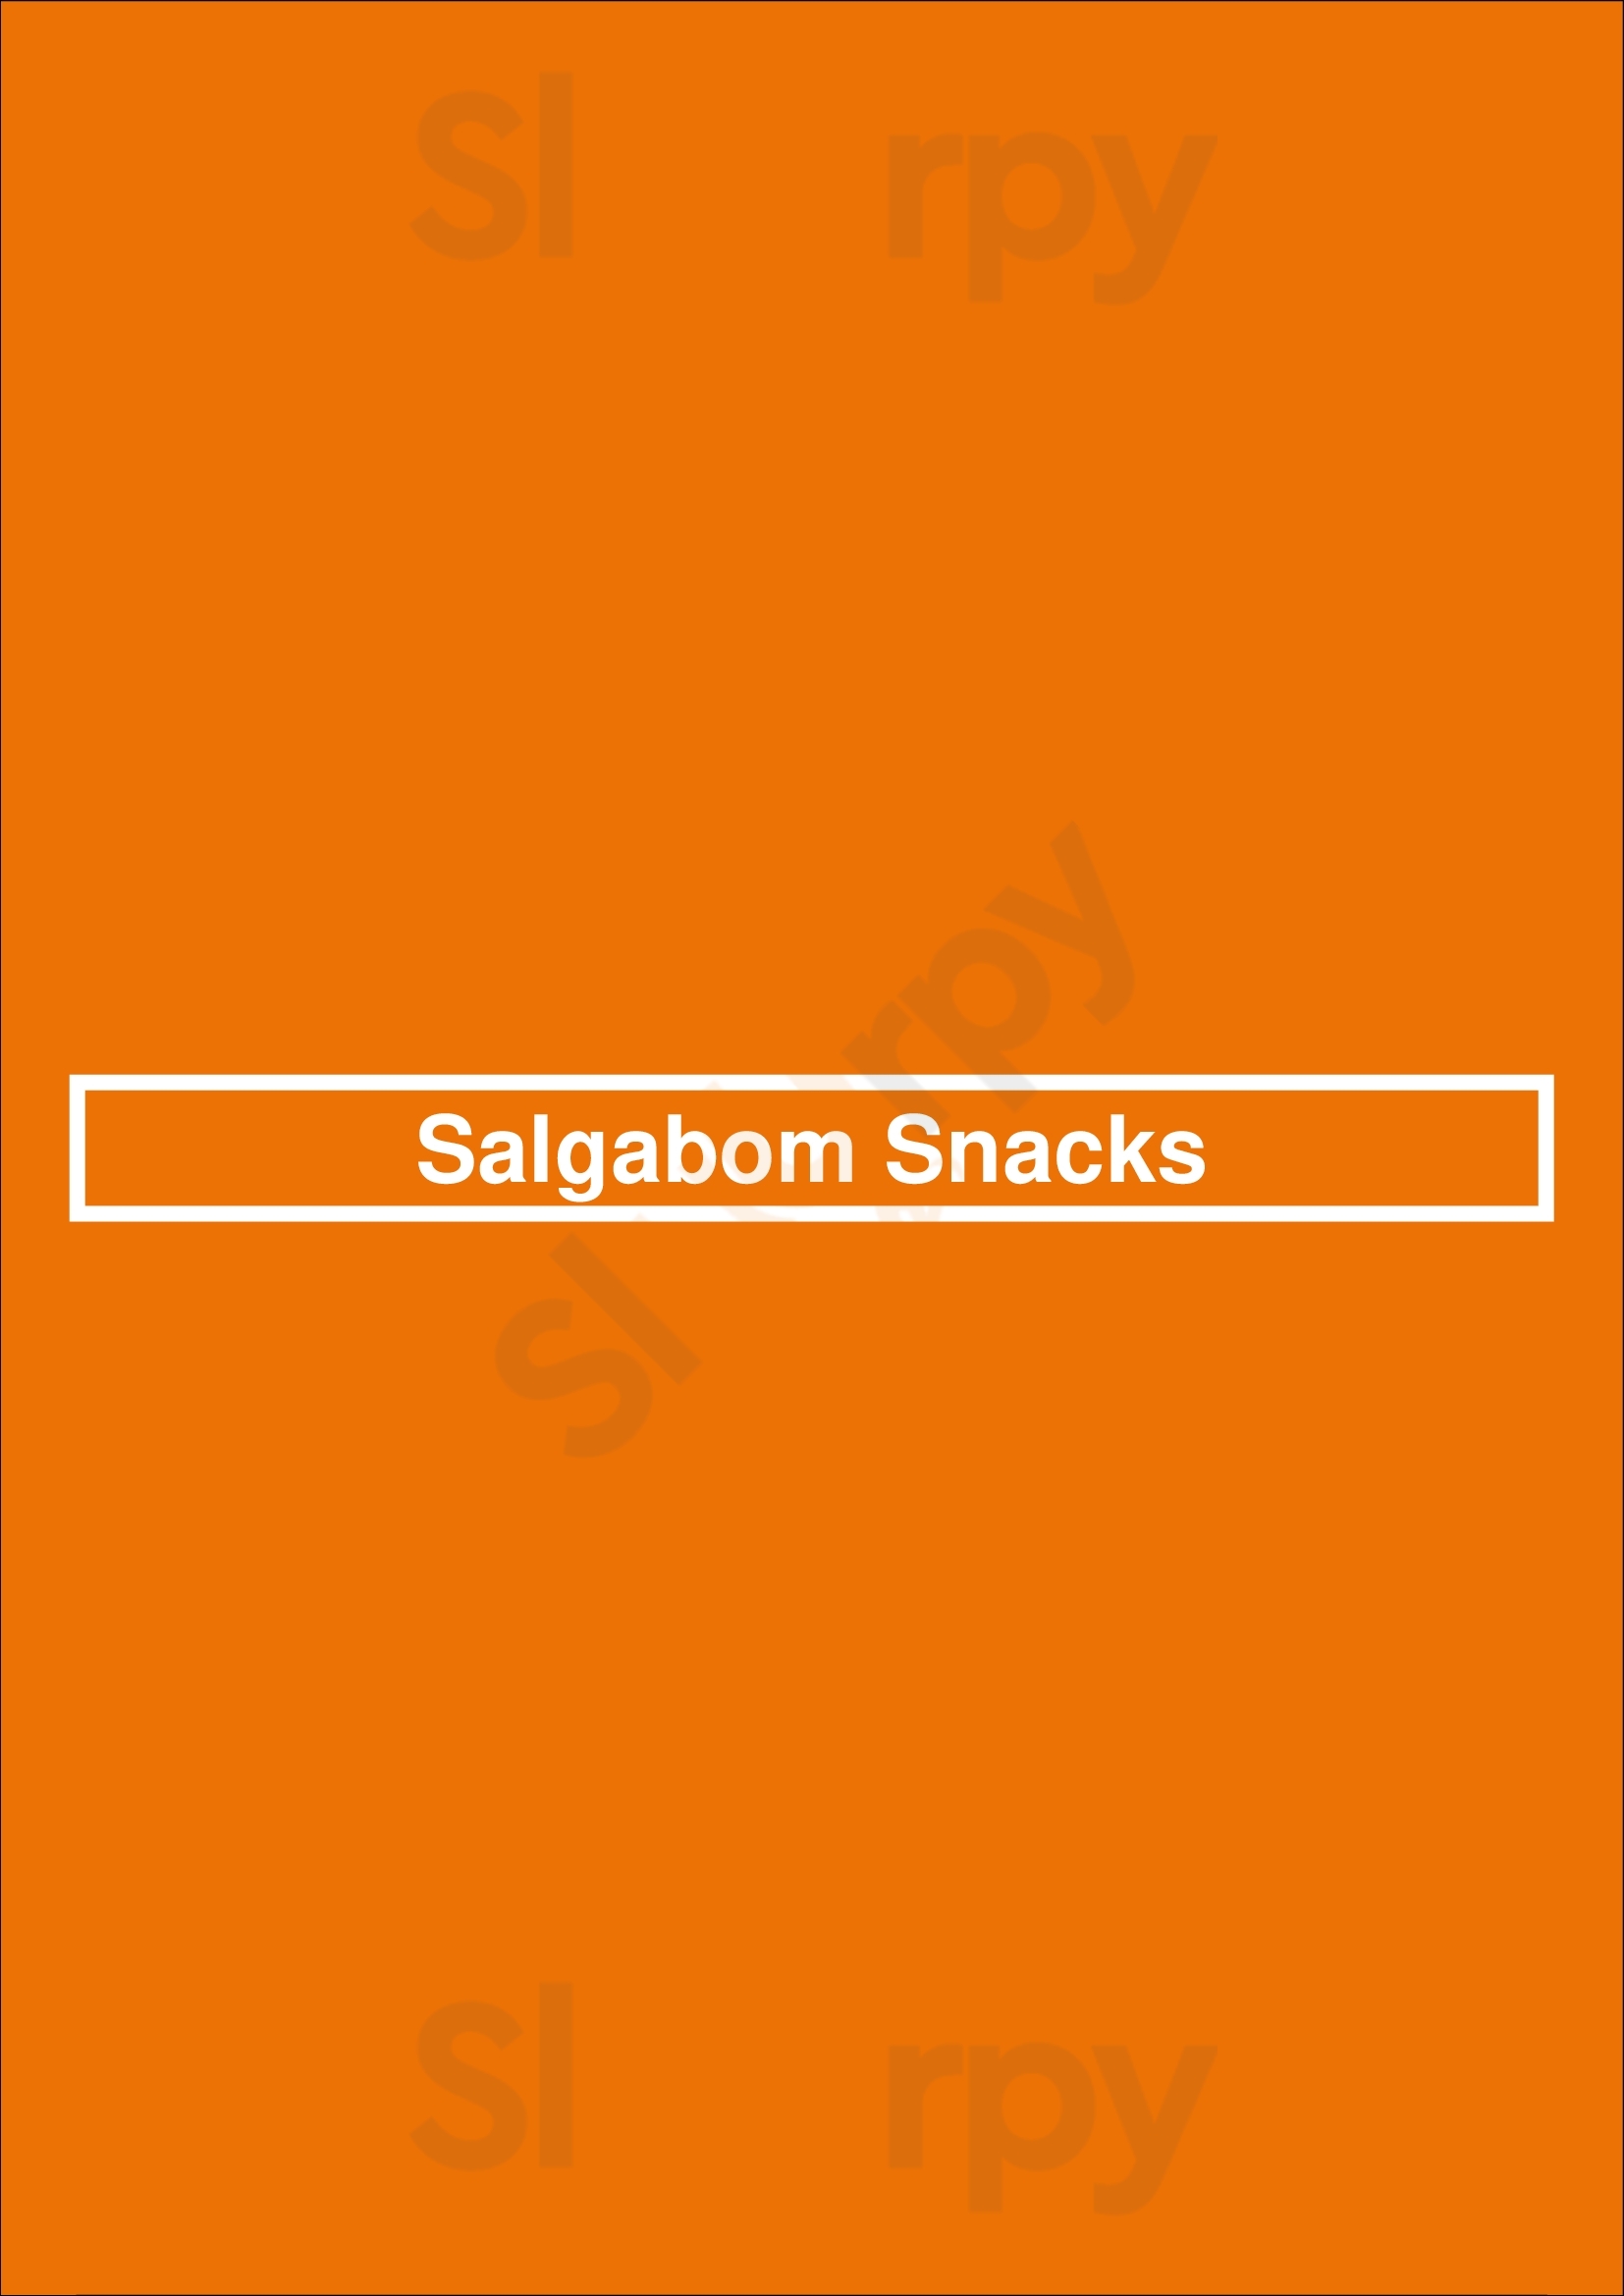 Salgabom Snacks Worcester Menu - 1